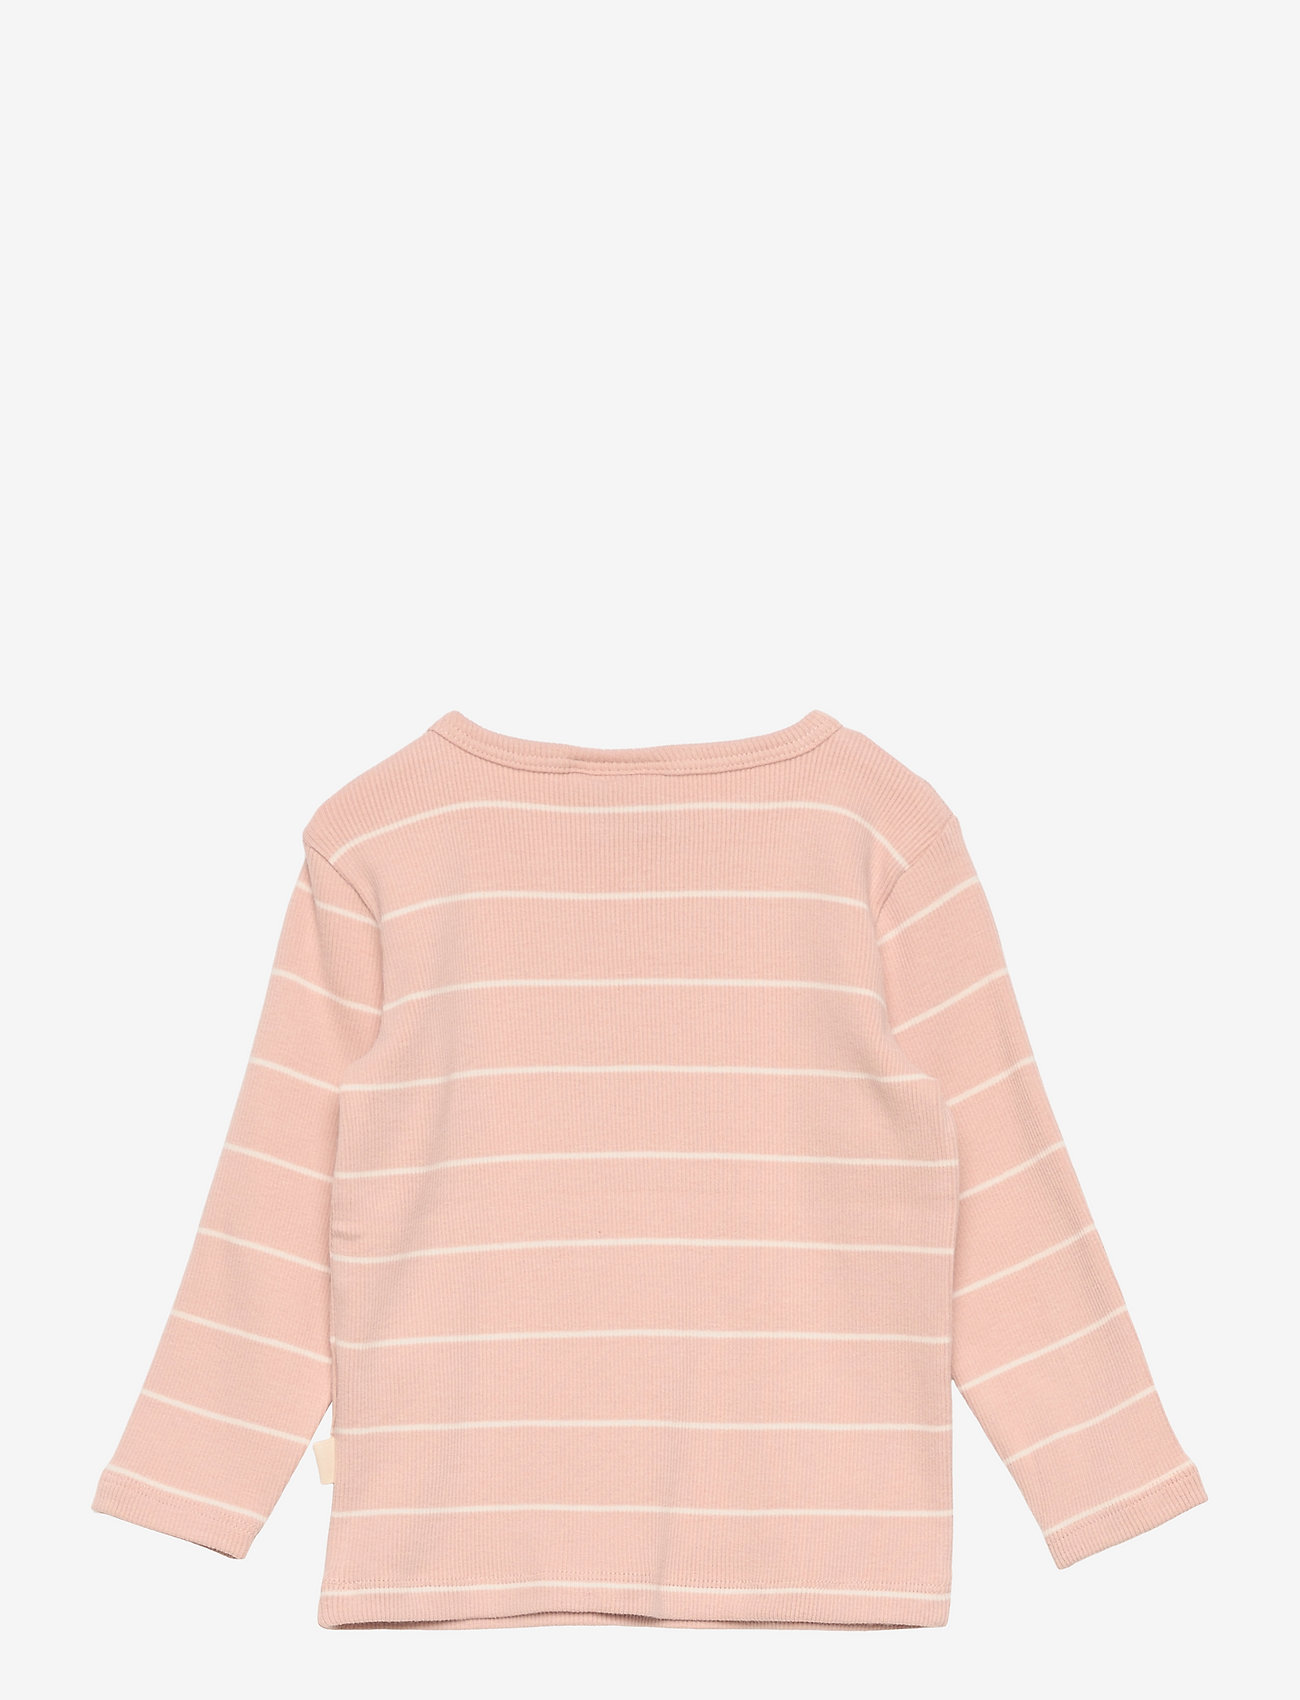 Sofie Schnoor Baby and Kids - T-shirt long-sleeve - marškinėliai ilgomis rankovėmis - light rose - 1